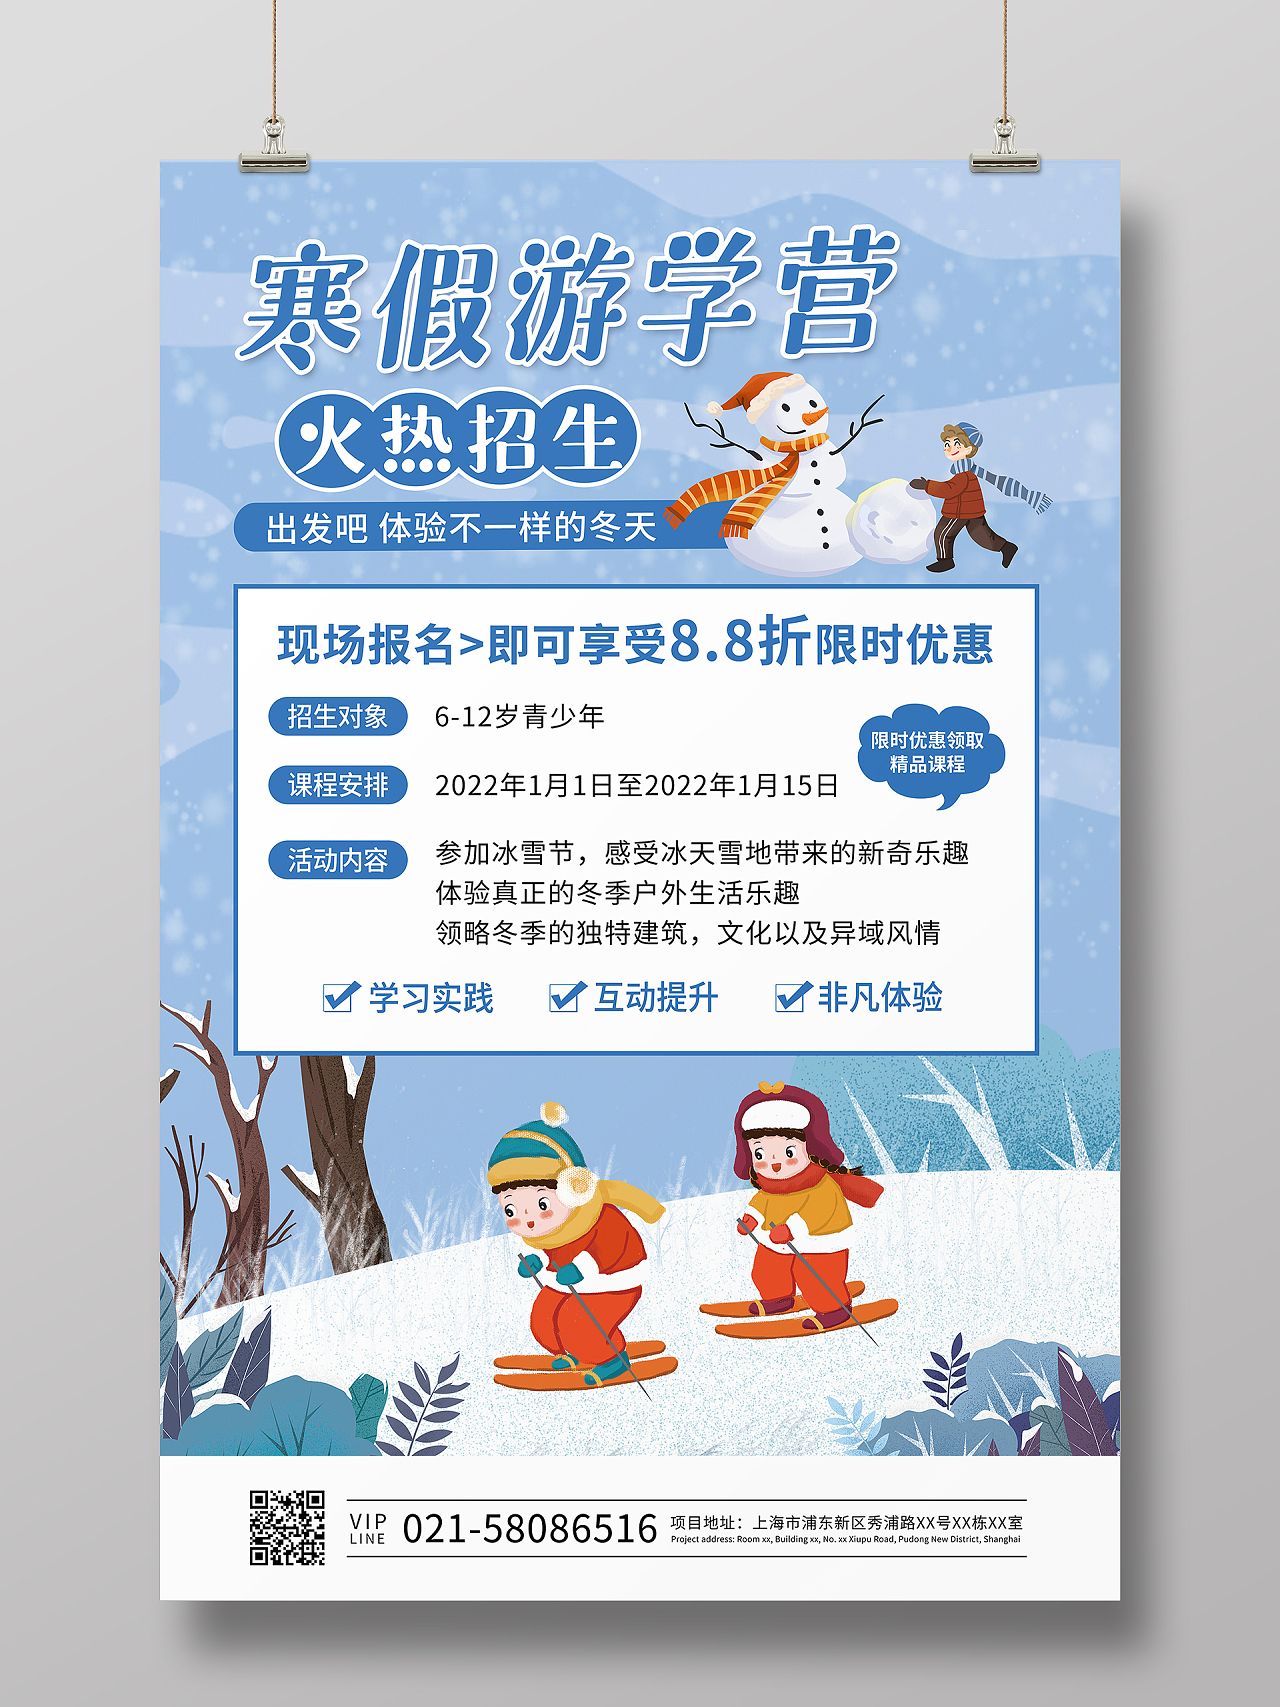 蓝色插画寒假游学营冬令营招生宣传海报冬令营招生宣传单